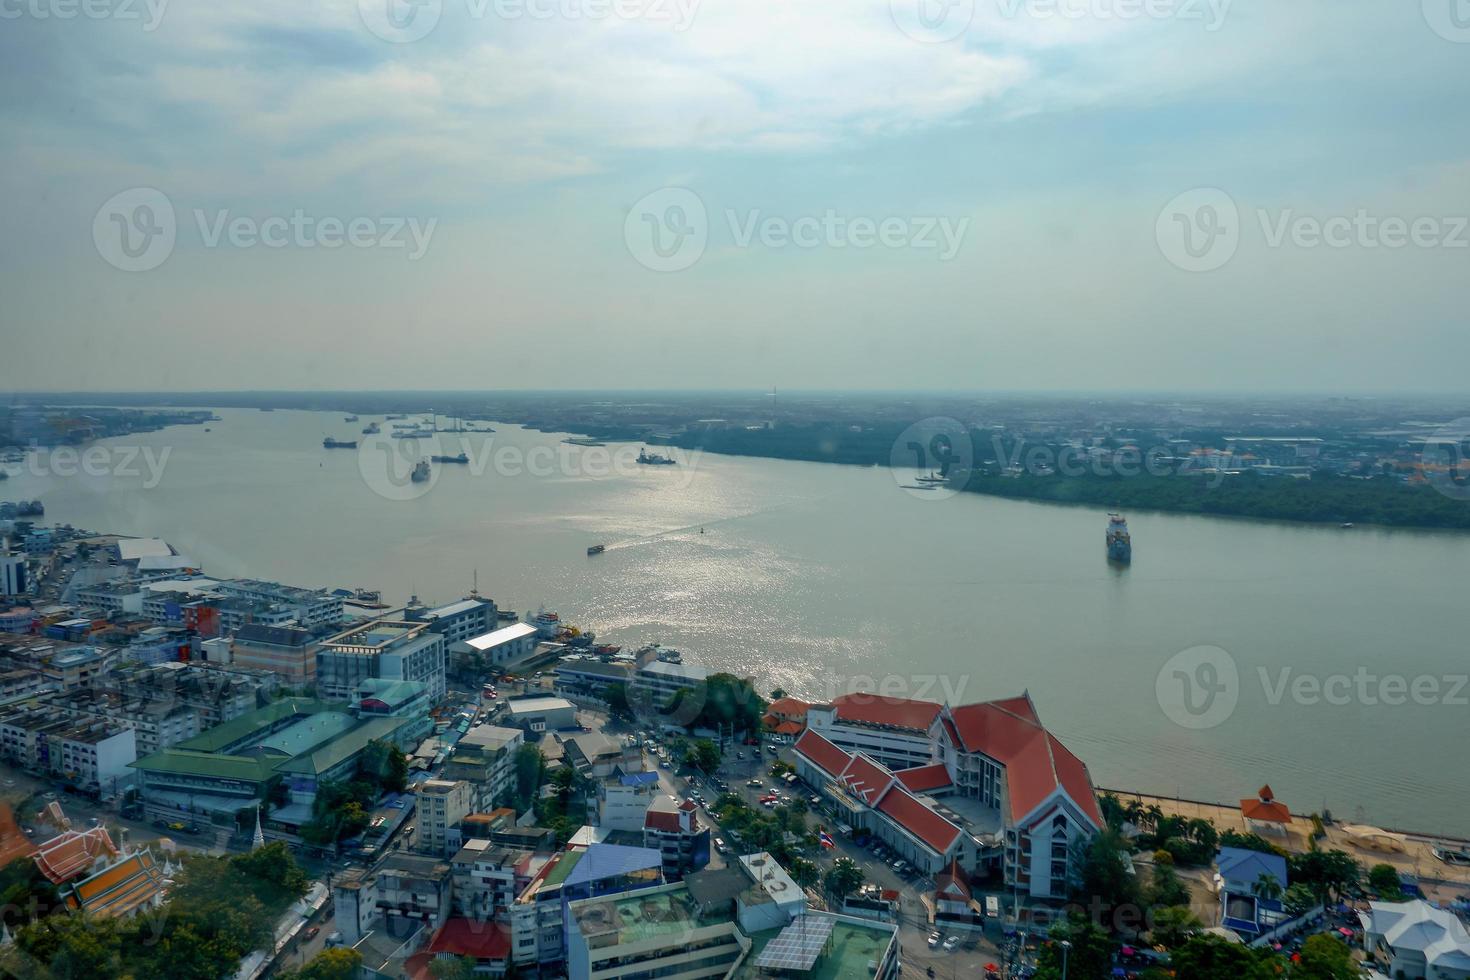 de landschap van de chao phraya rivier- estuarium en de landschap van samut prakan stad zijn de poorten naar de zeeën van thailand handelaar schepen. foto